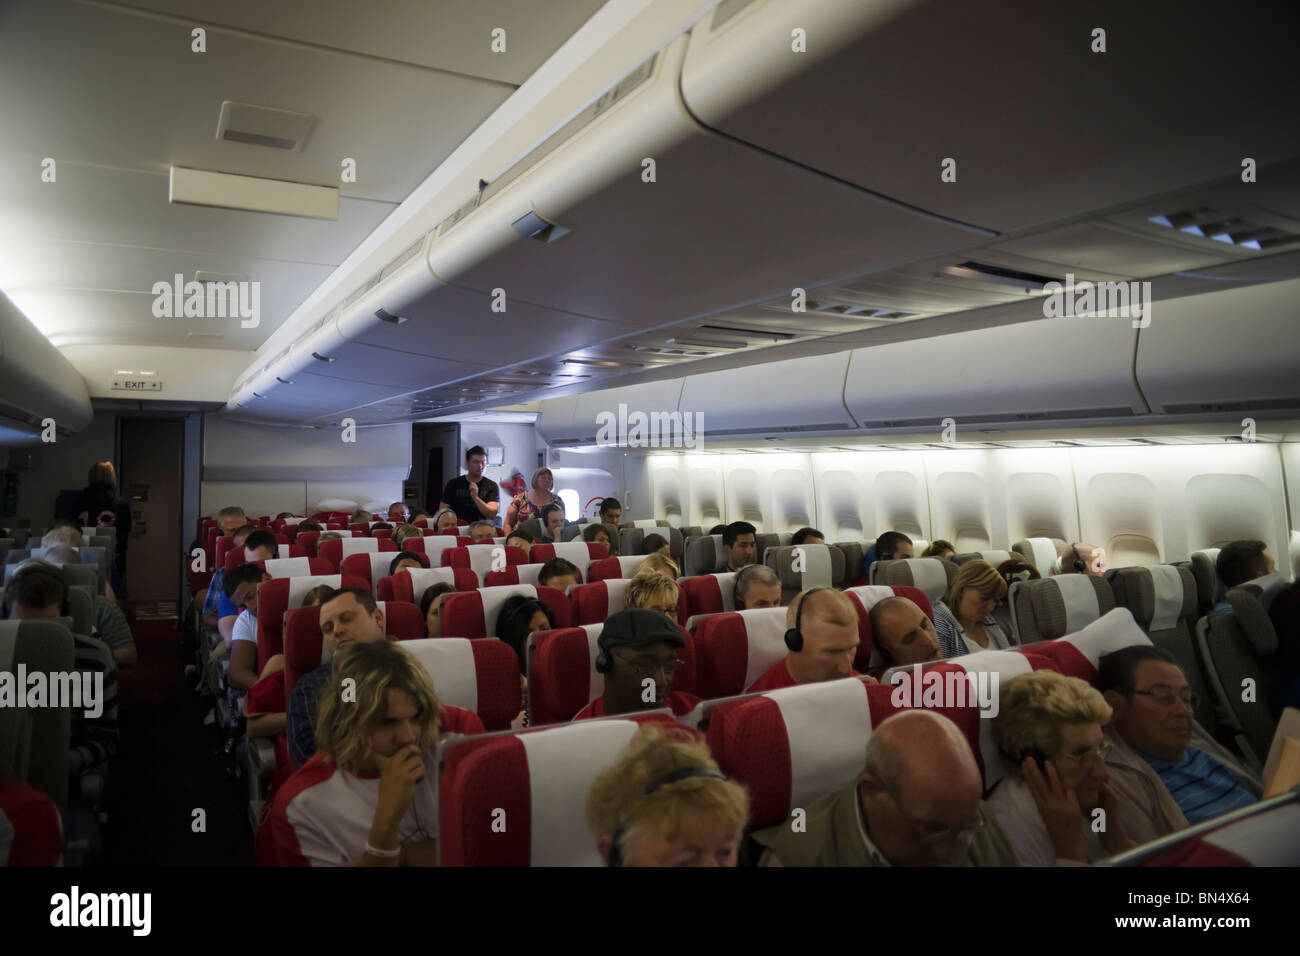 Intérieur de Virgin Atlantic Boeing 747 jumbo jet transatlantique avec la section de l'économie et les passagers Banque D'Images